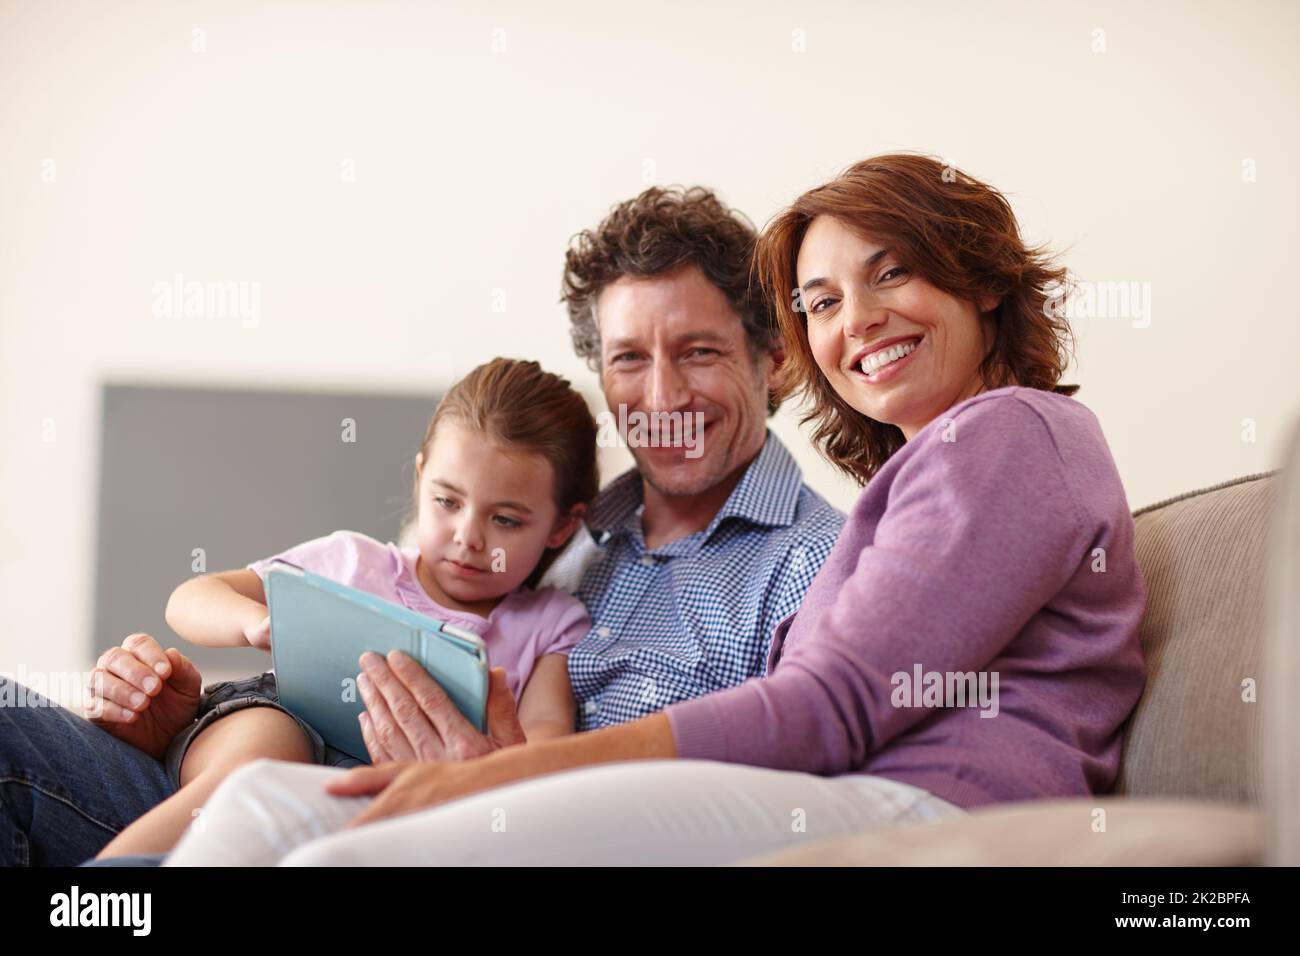 La famiglia è un piccolo mondo creato dall'amore. Scatto di una bambina con un tablet digitale bianco seduto con i genitori. Foto Stock